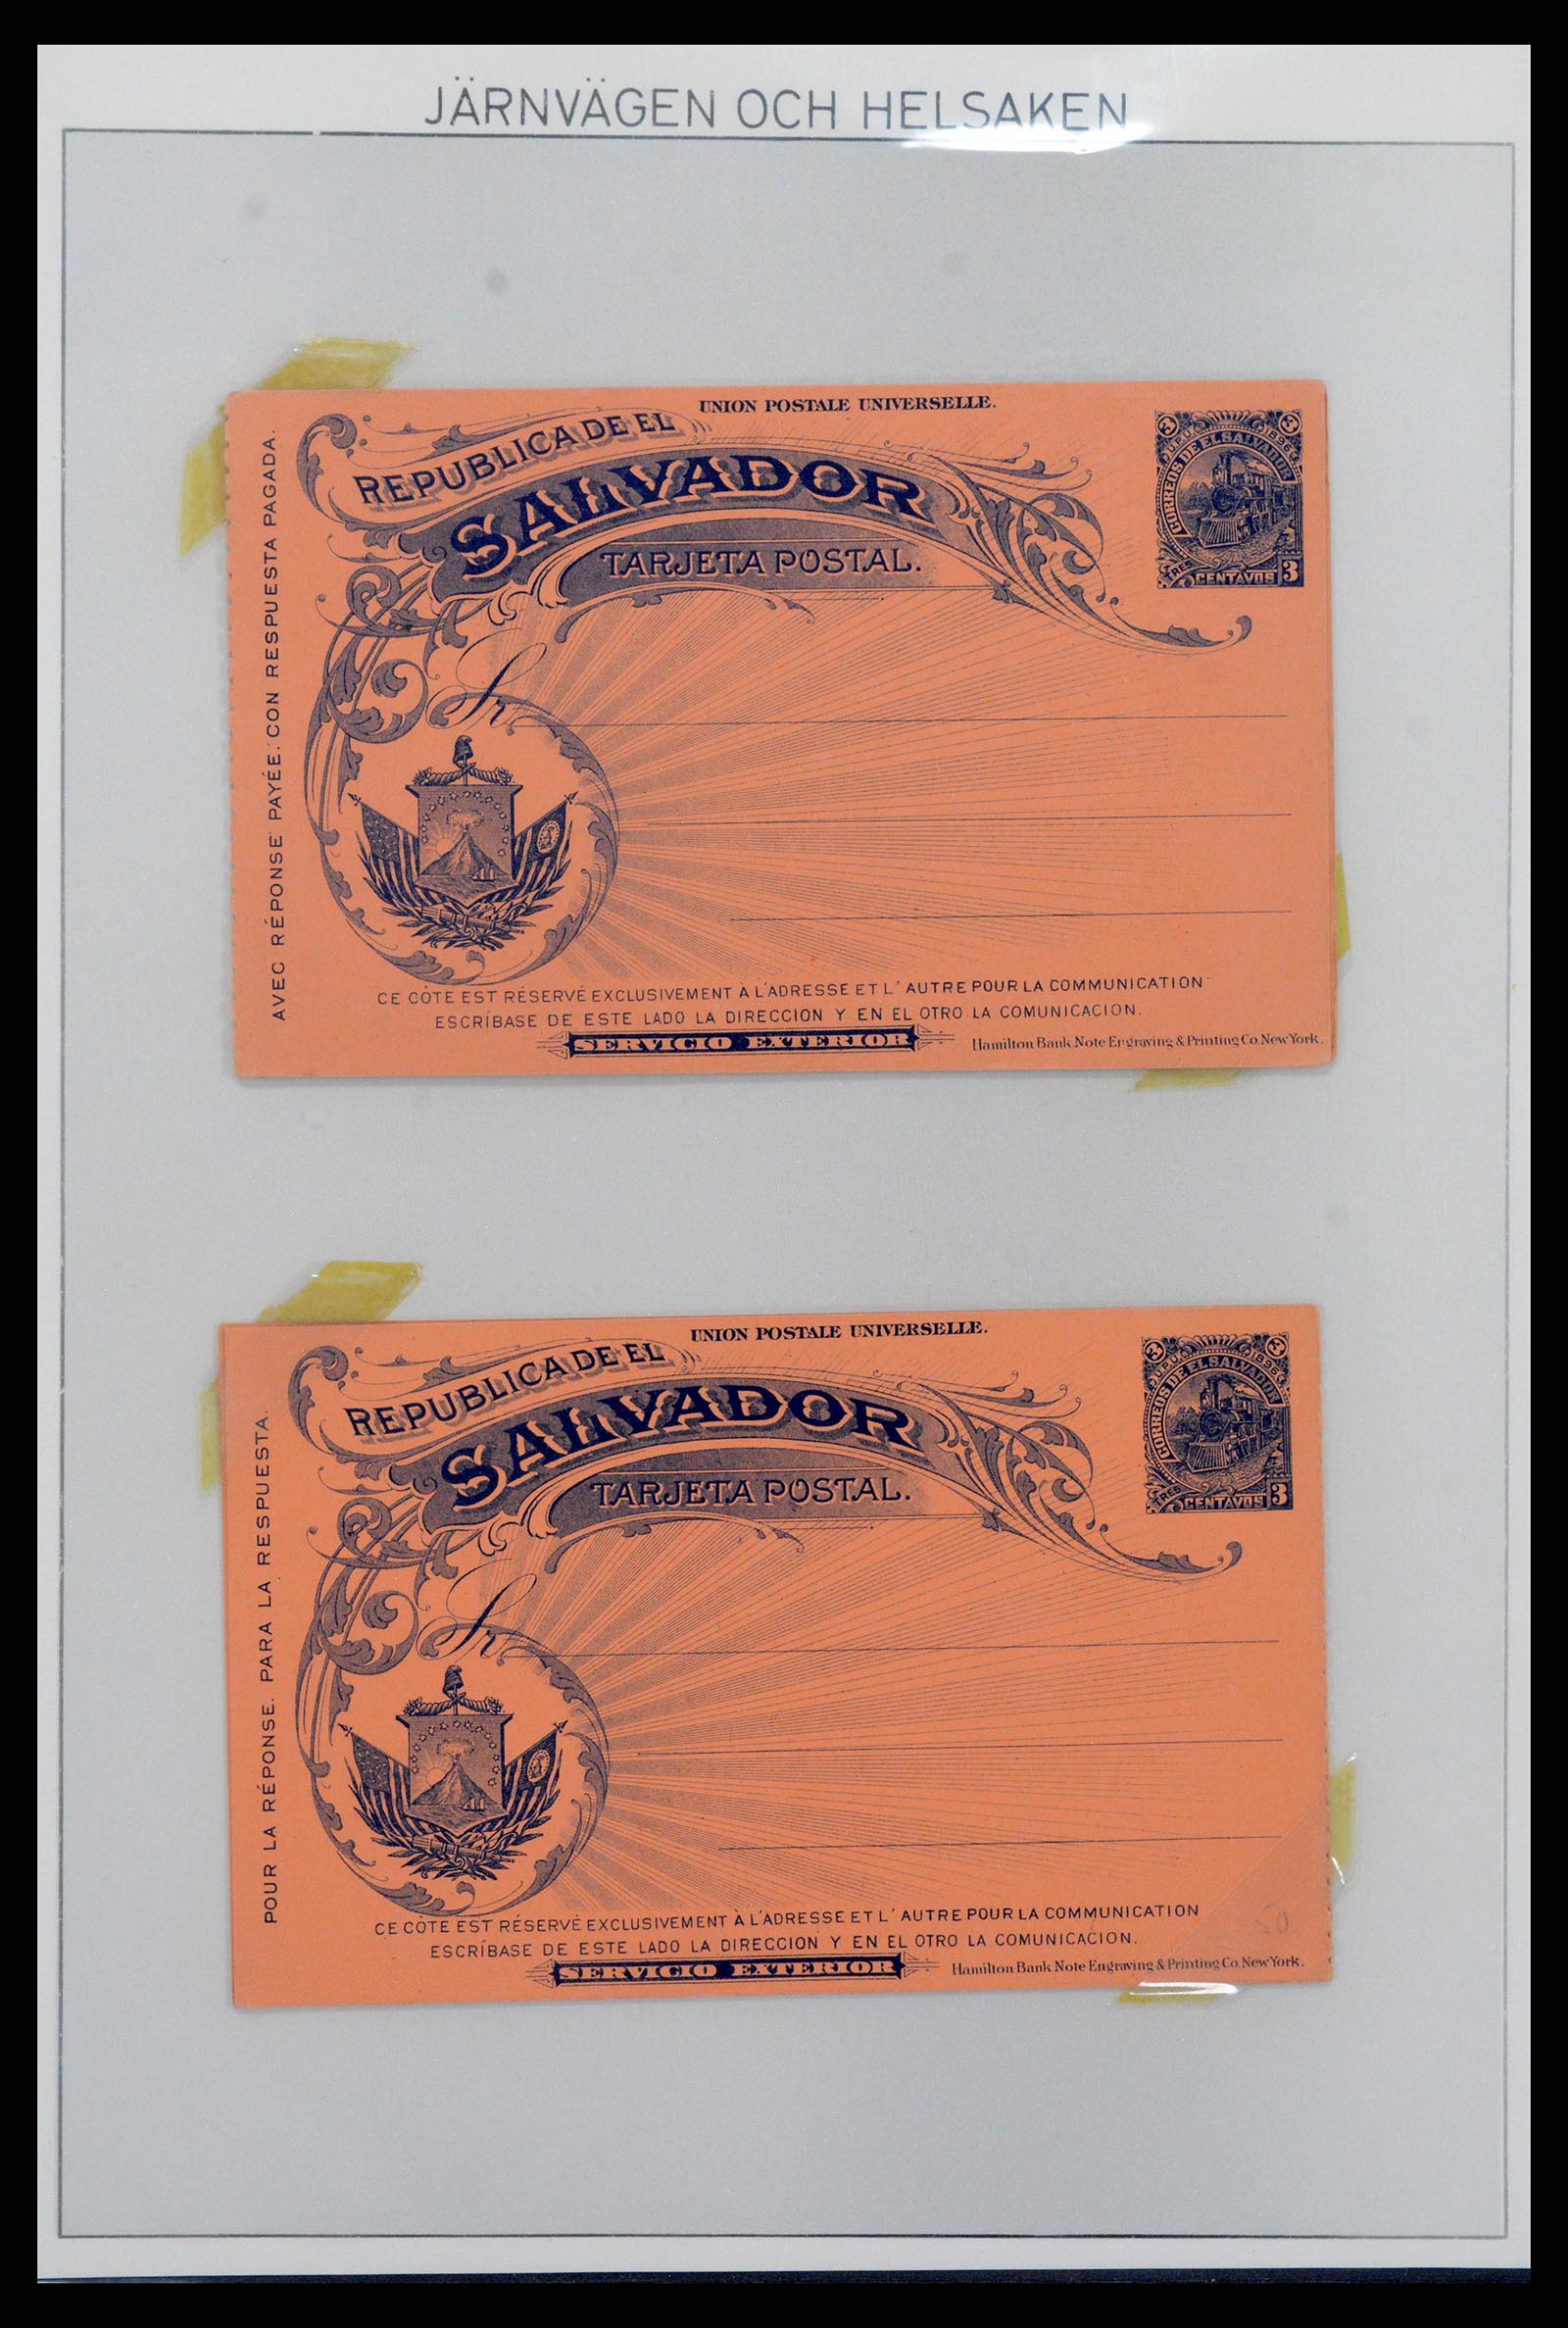 37412 024 - Stamp collection 37412 El Salvador trains 1891-1930.